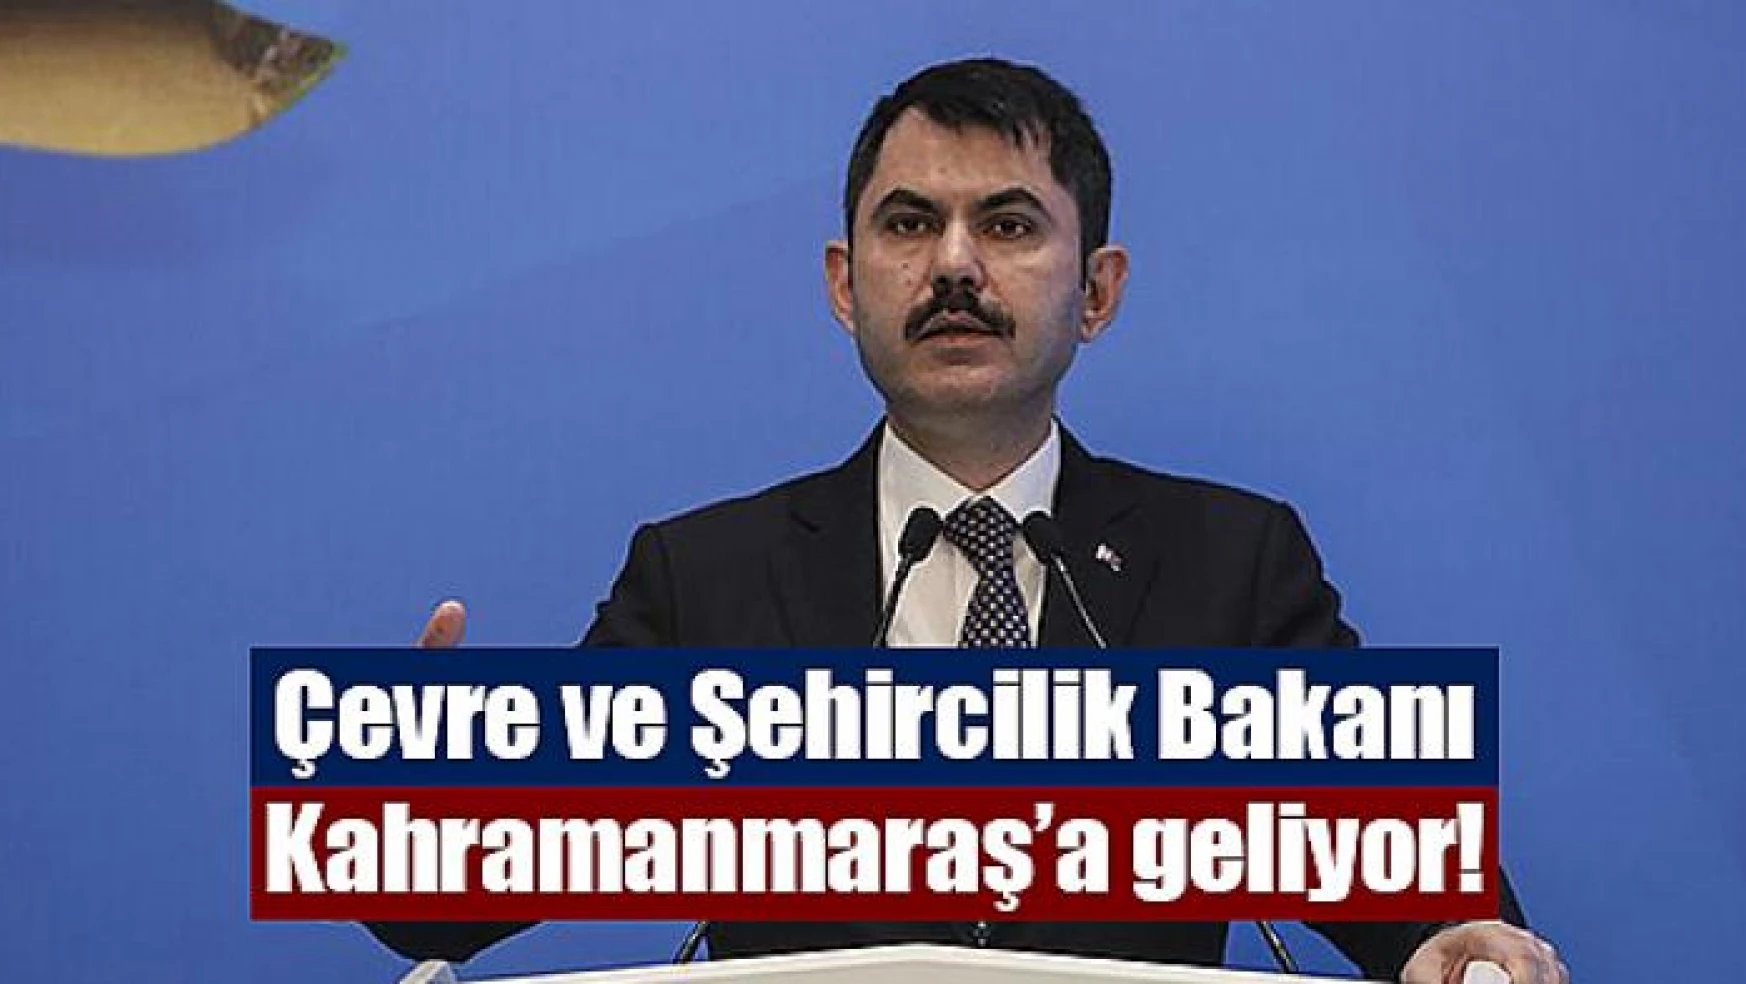 Çevre ve Şehircilik Bakanı Kahramanmaraş'a geliyor!